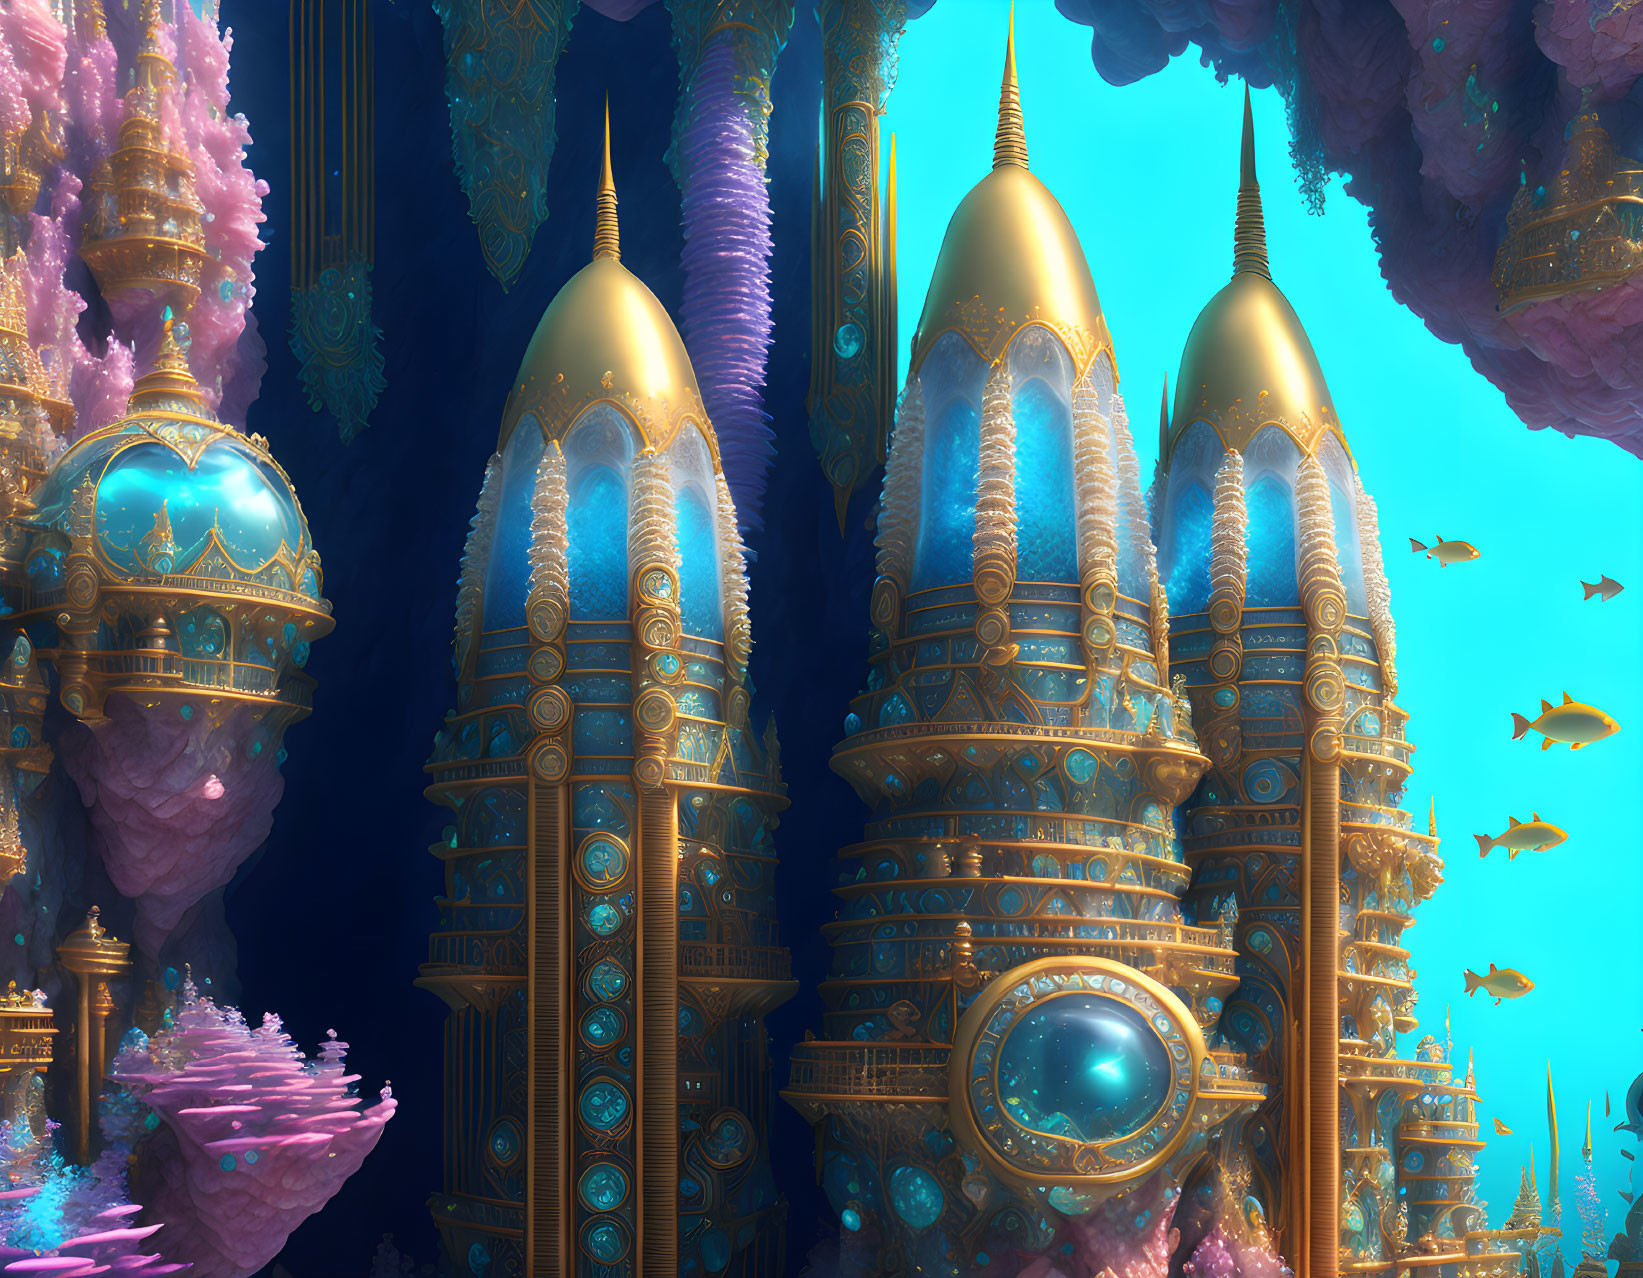 underwater city 